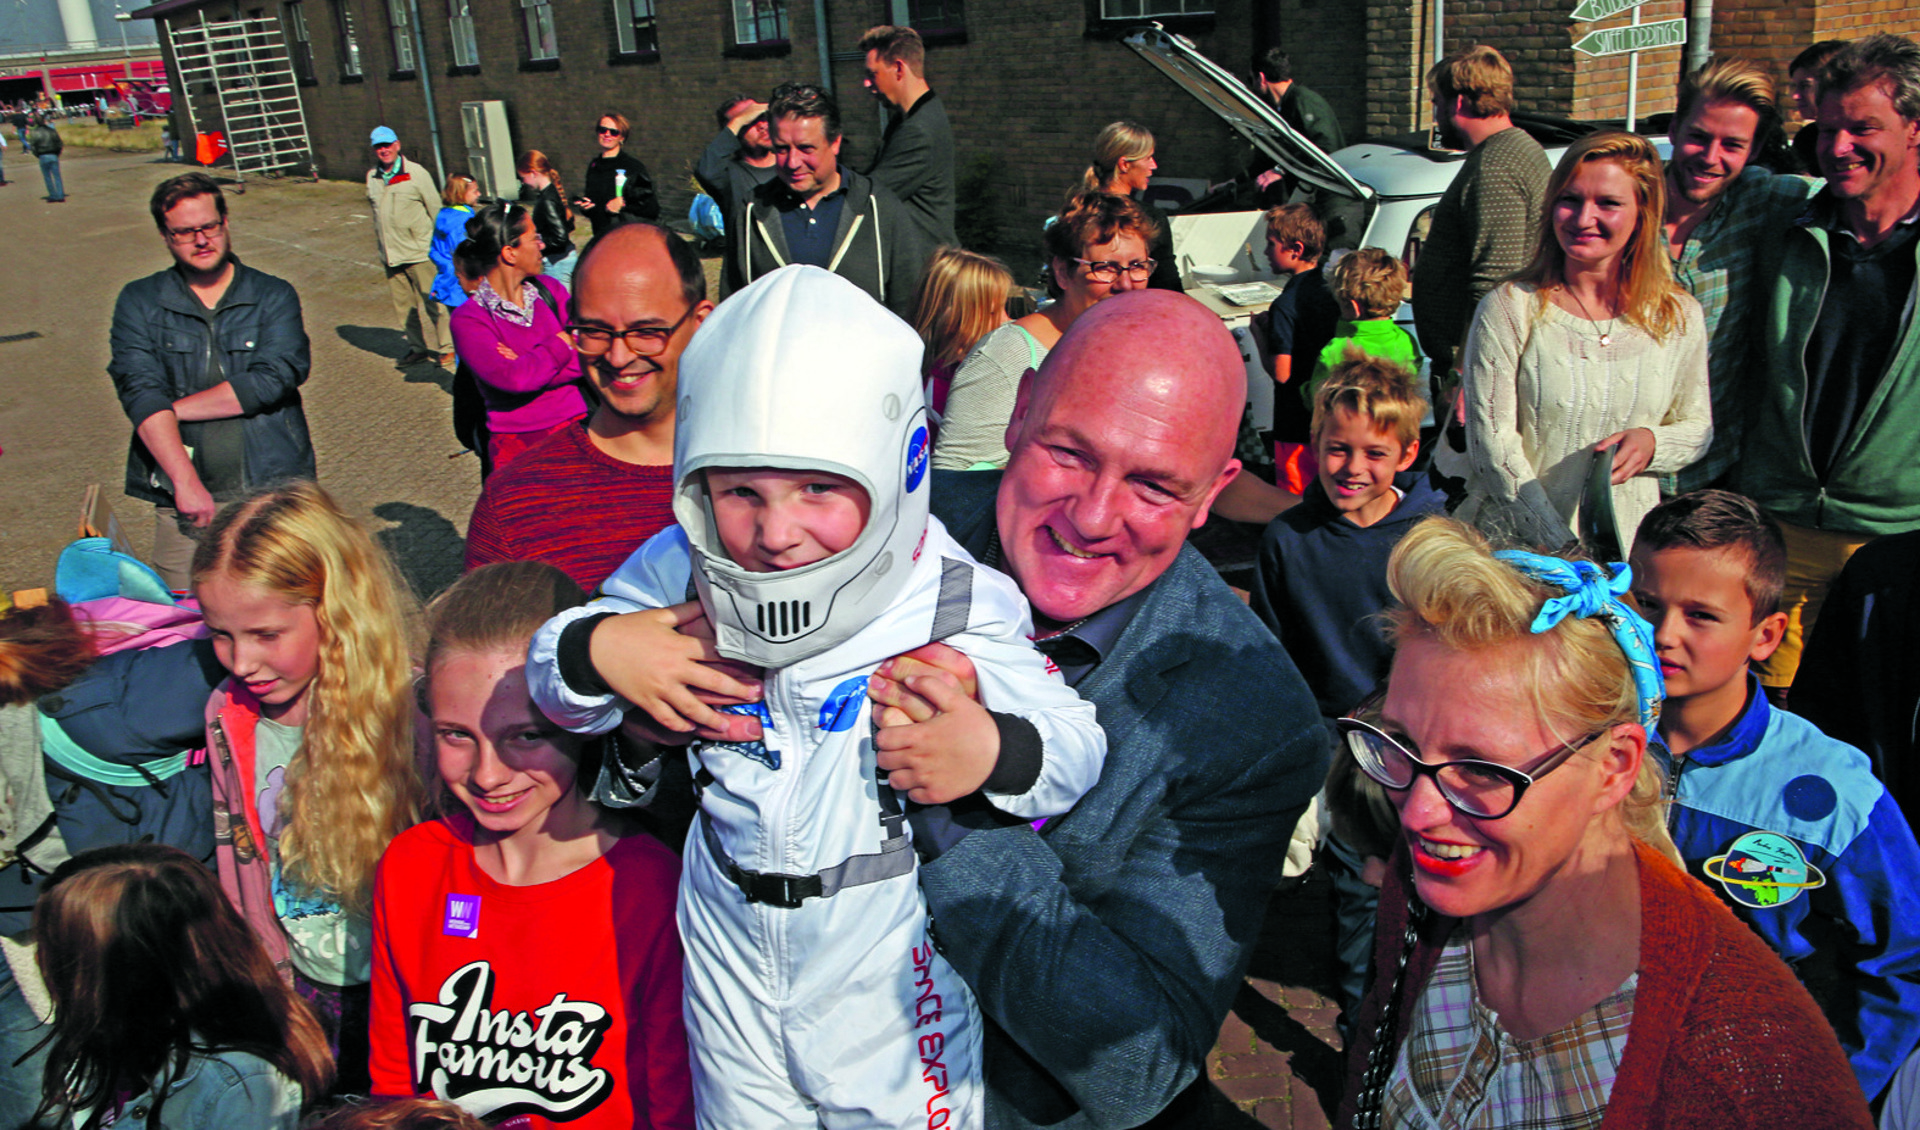 De populariteit van astronaut André Kuipers draagt bij meer belangstelling van jongeren voor techniek (foto: Rowin van Diest).